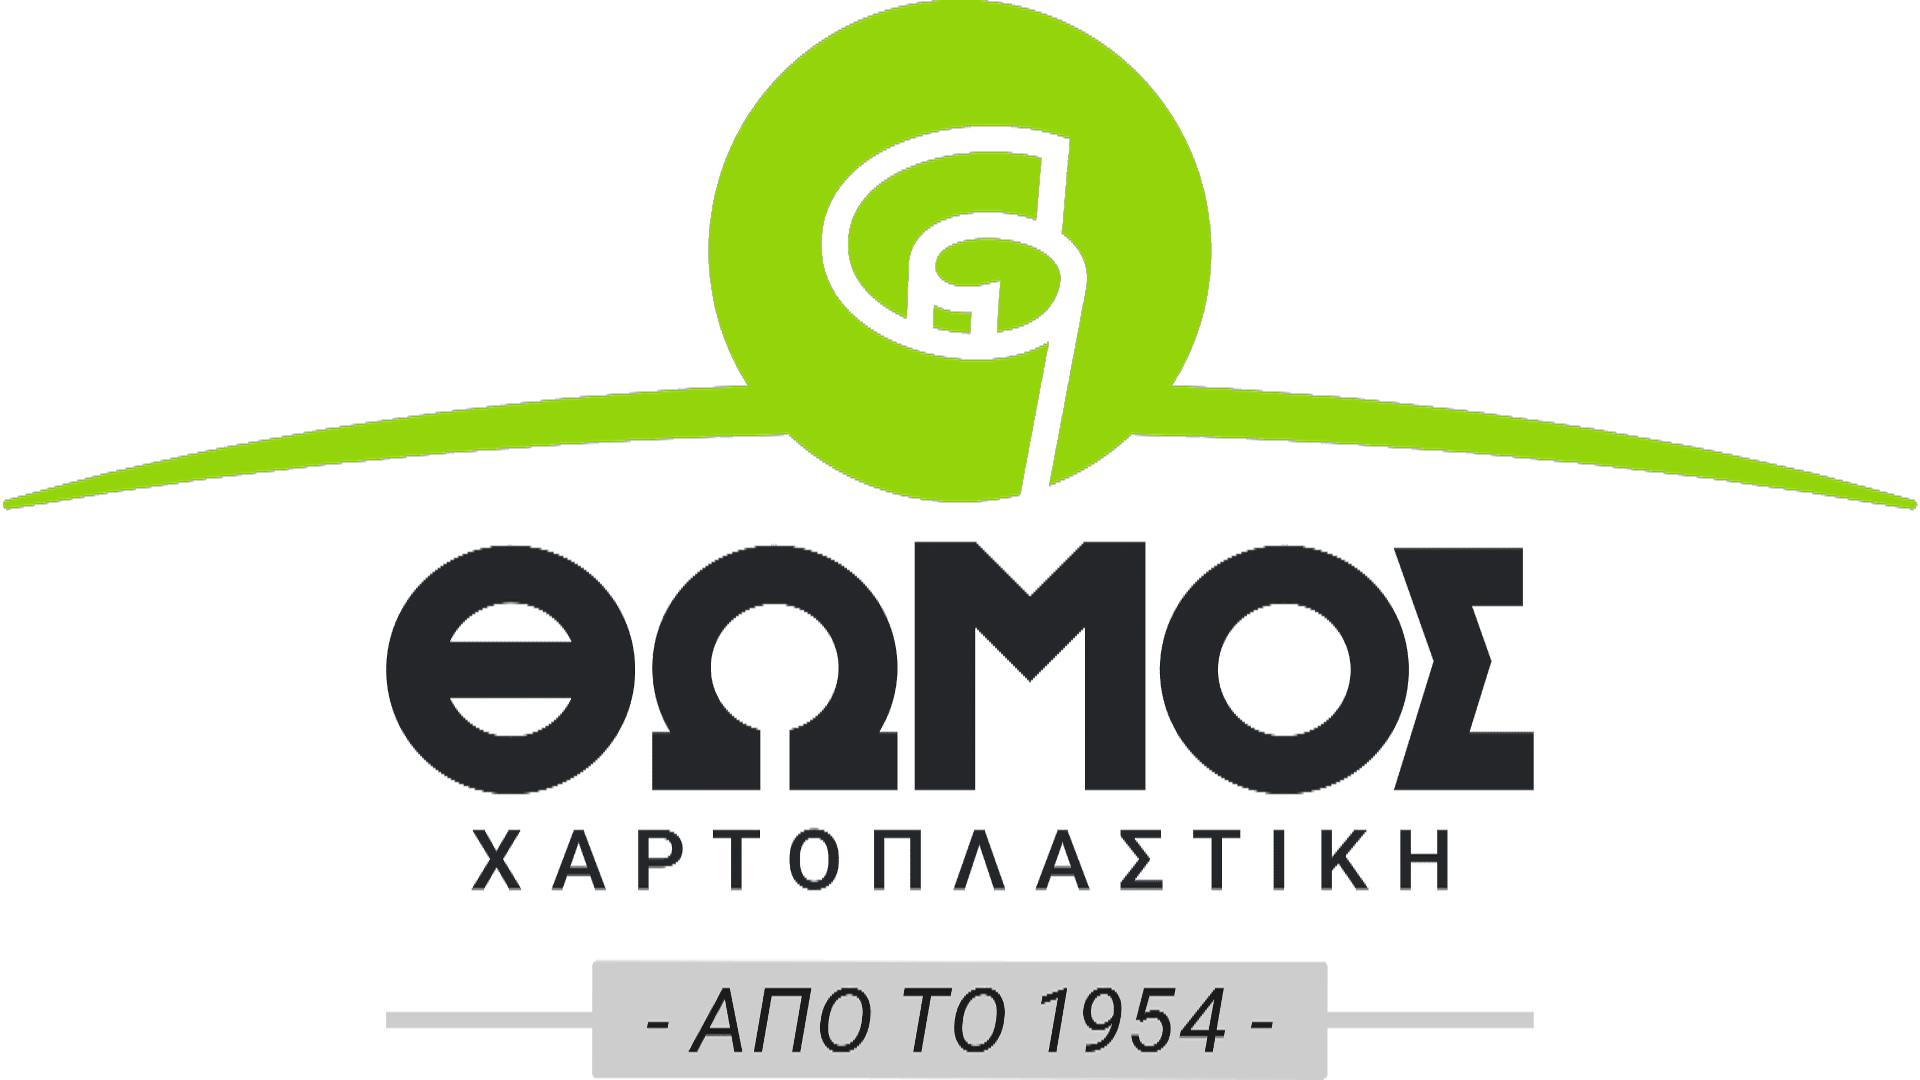 θώμος-thomos-chartoplastiki-logo